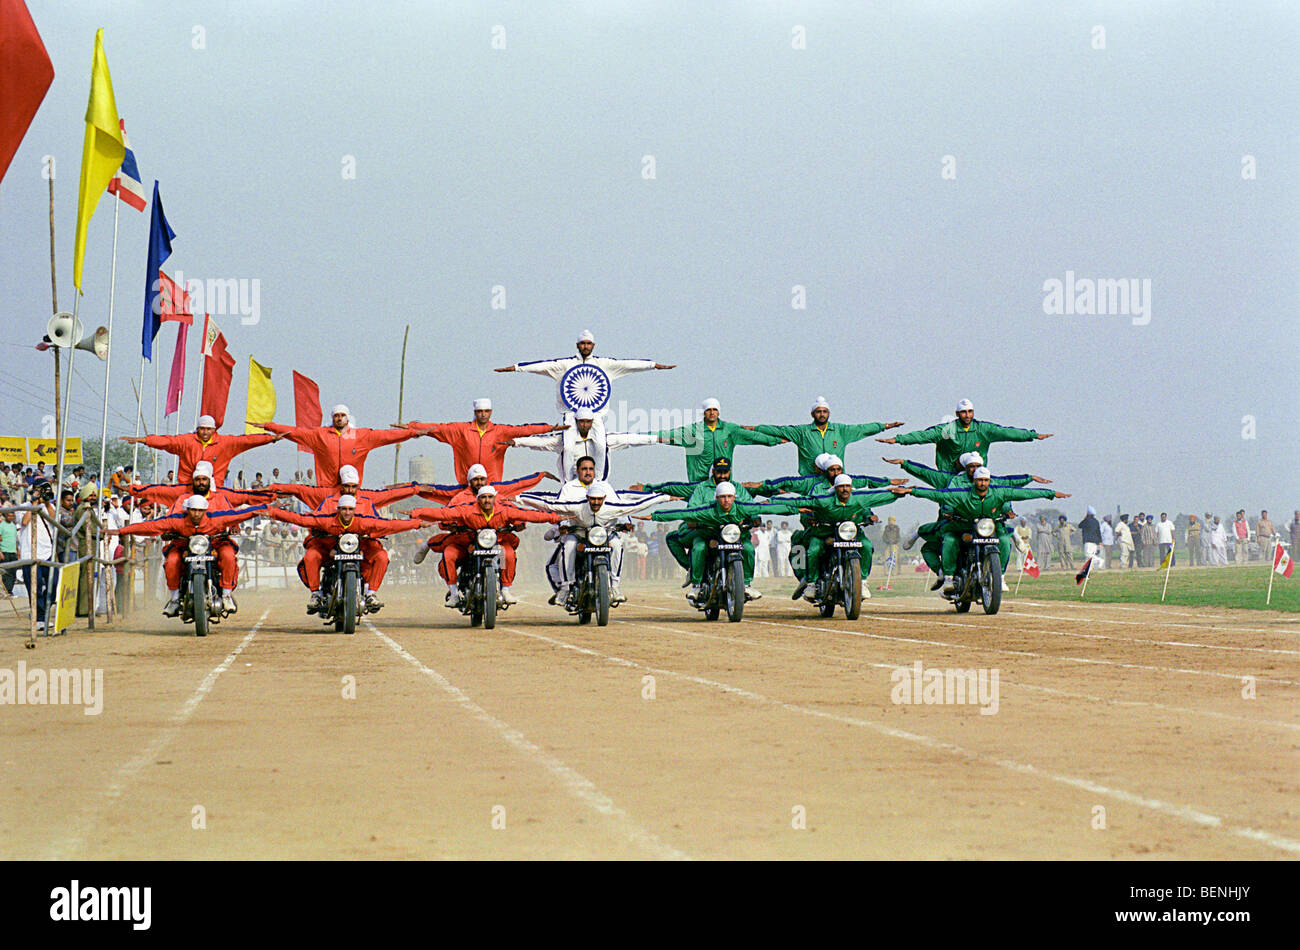 Les couleurs des cascadeurs de la drapeau indien sur des motos dans les jeux olympiques de Kila Raipur Punjab Inde Banque D'Images